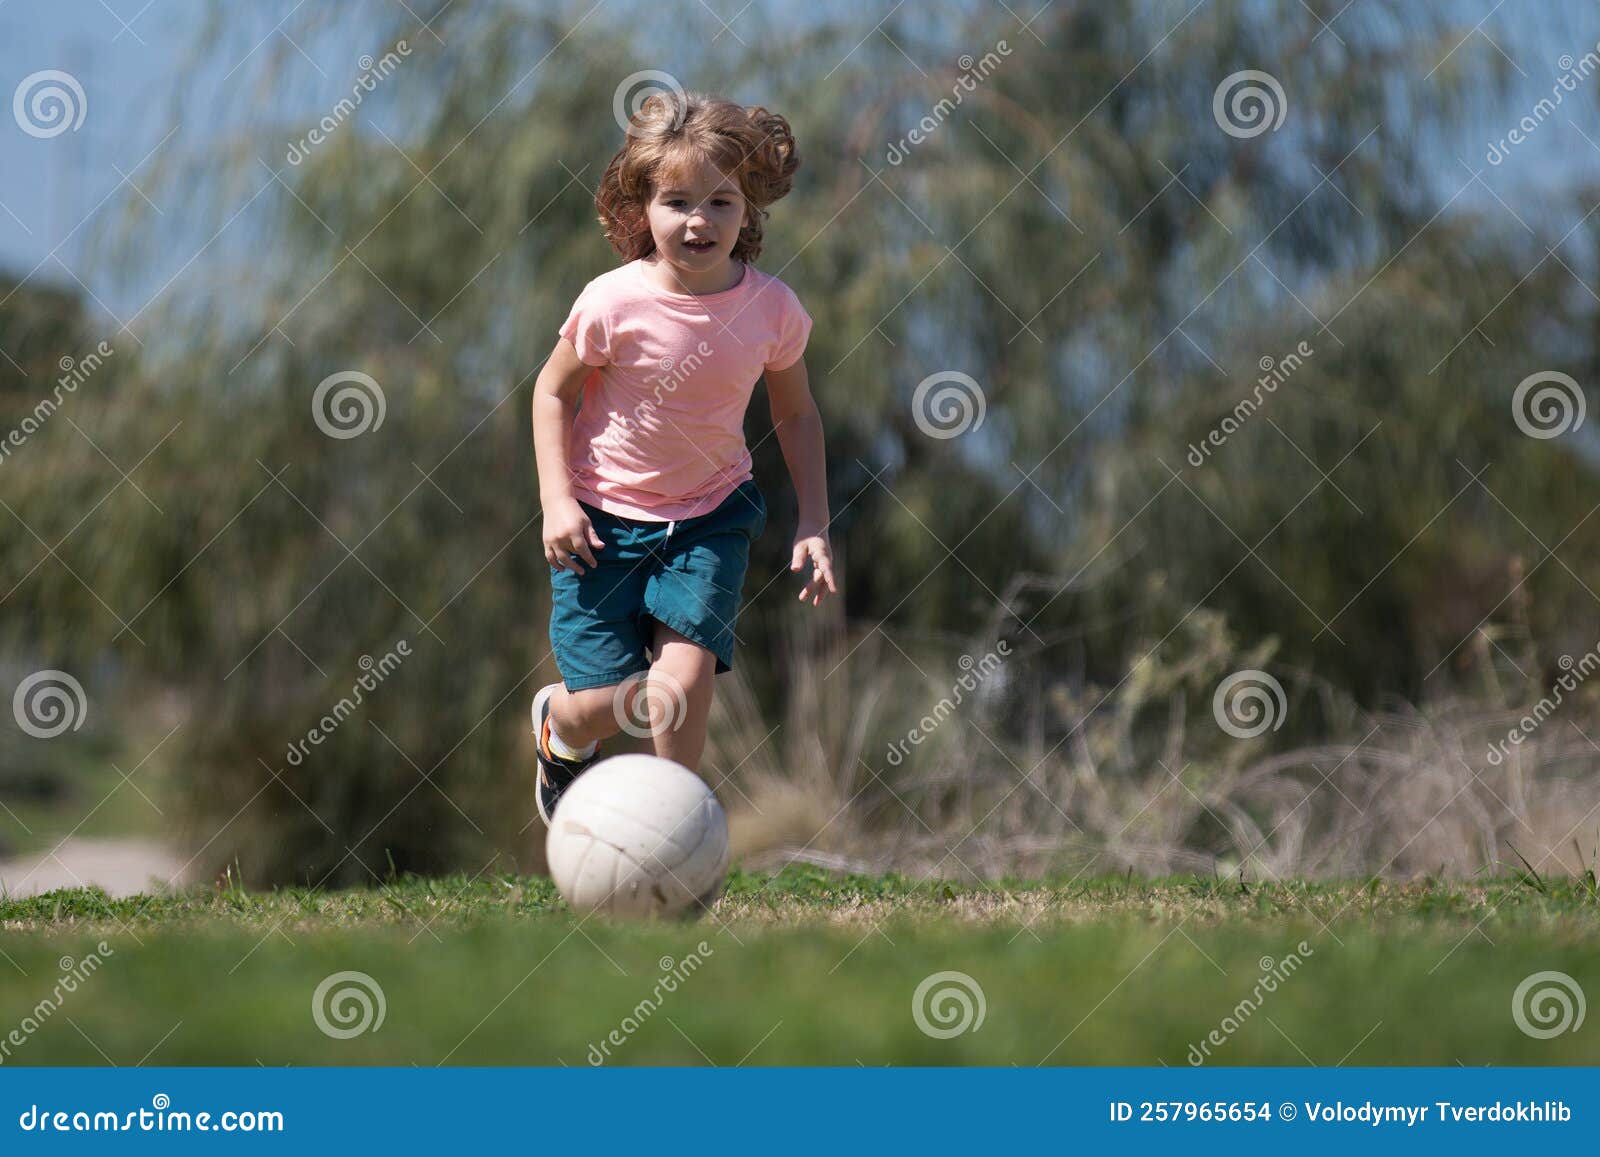 Jogo de futebol infantil. meninos jogando futebol no campo de